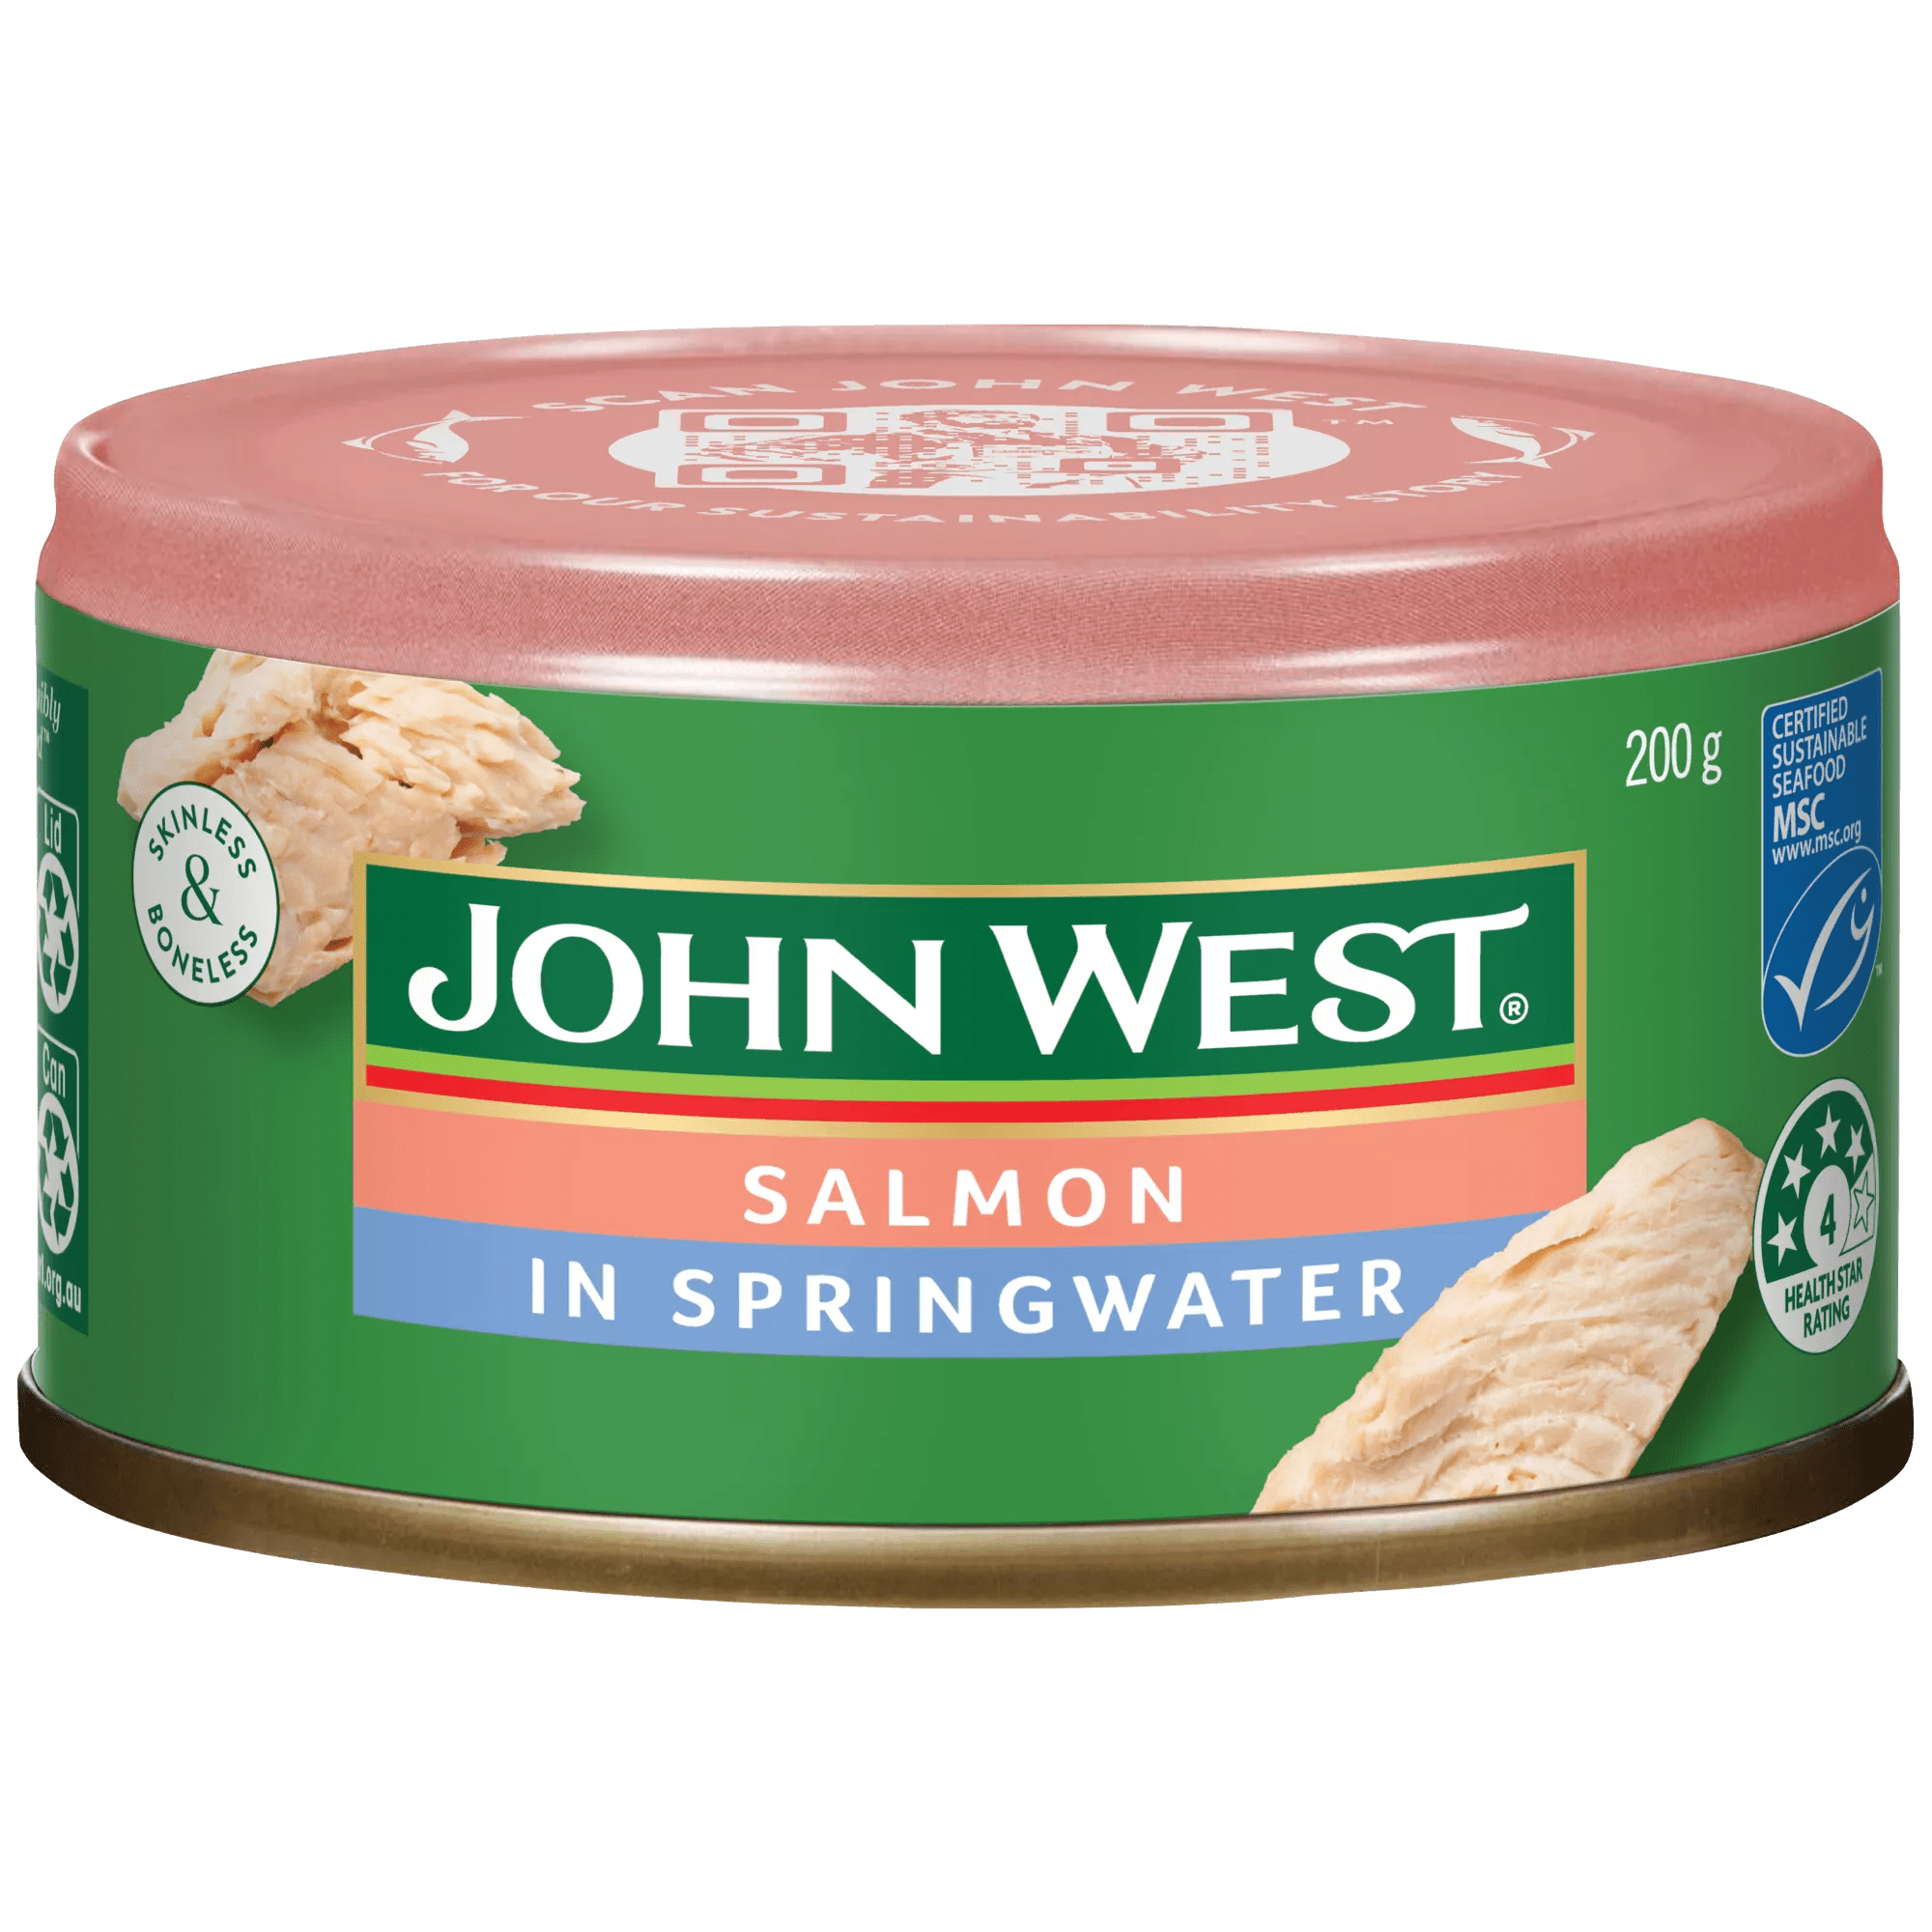 John West Skinless & Boneless Salmon in Springwater 200g